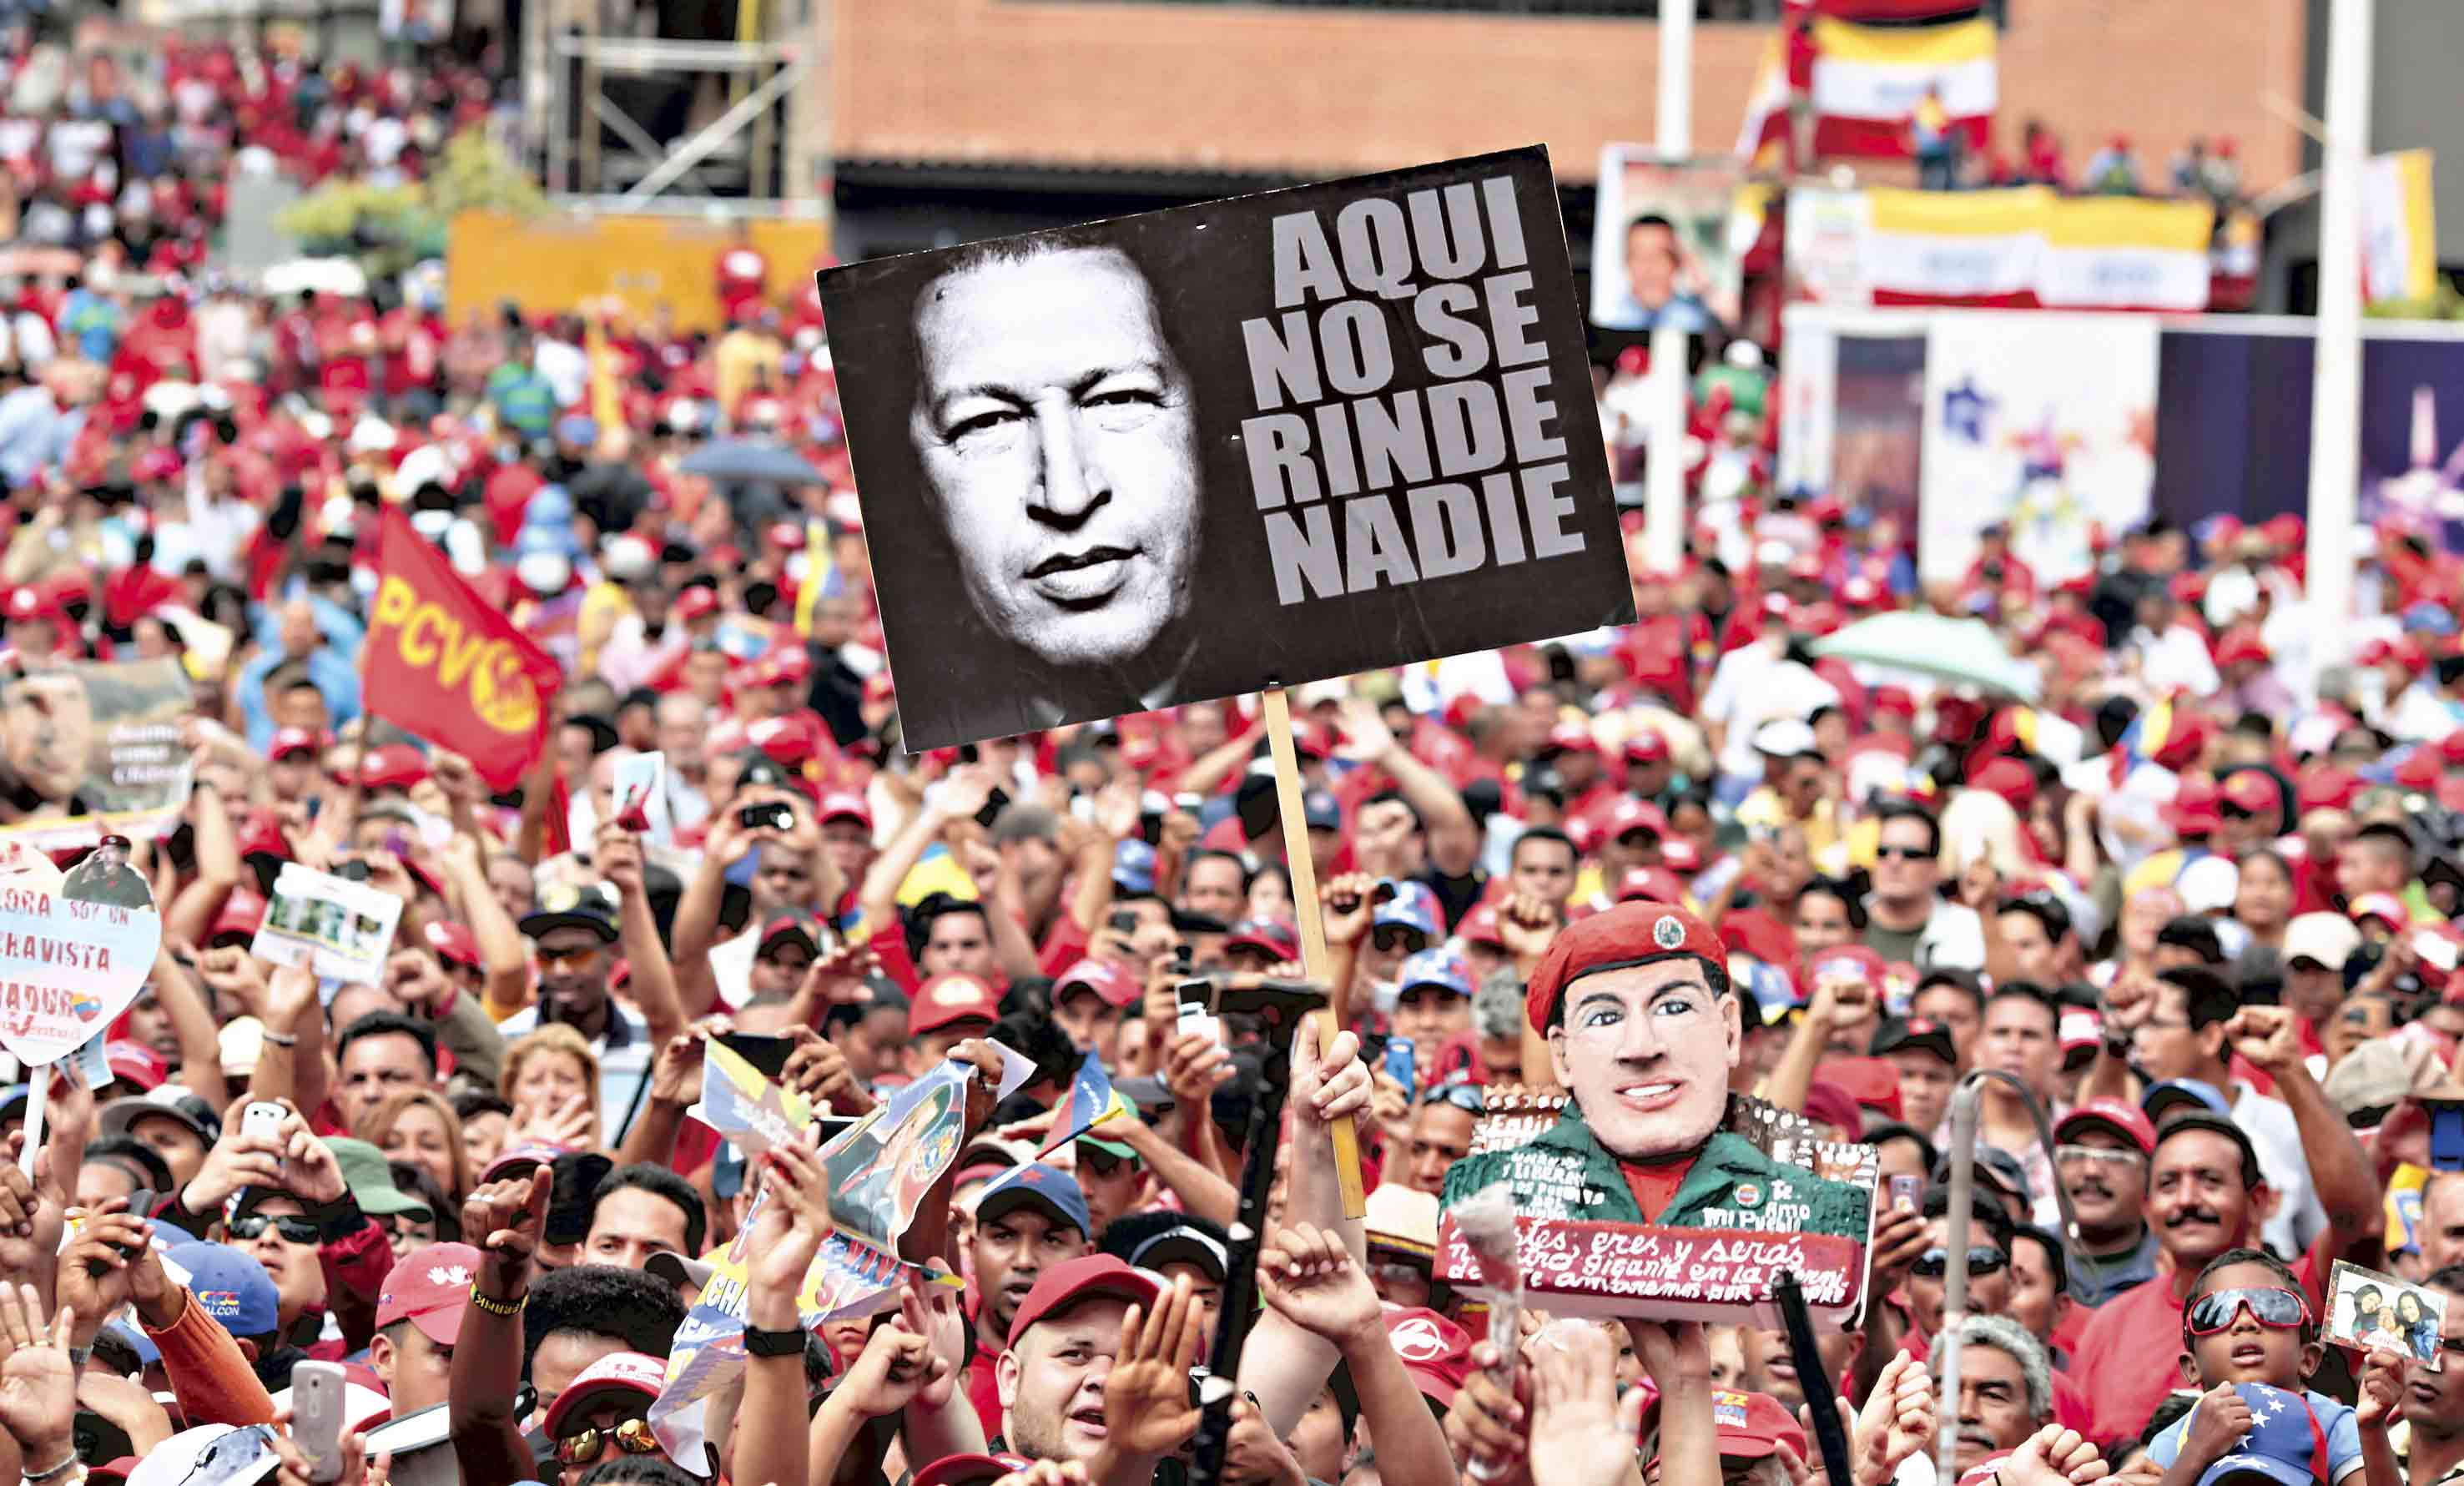 Nicolás Maduro reitera su denuncia sobre campaña mediática internacional contra Venezuela